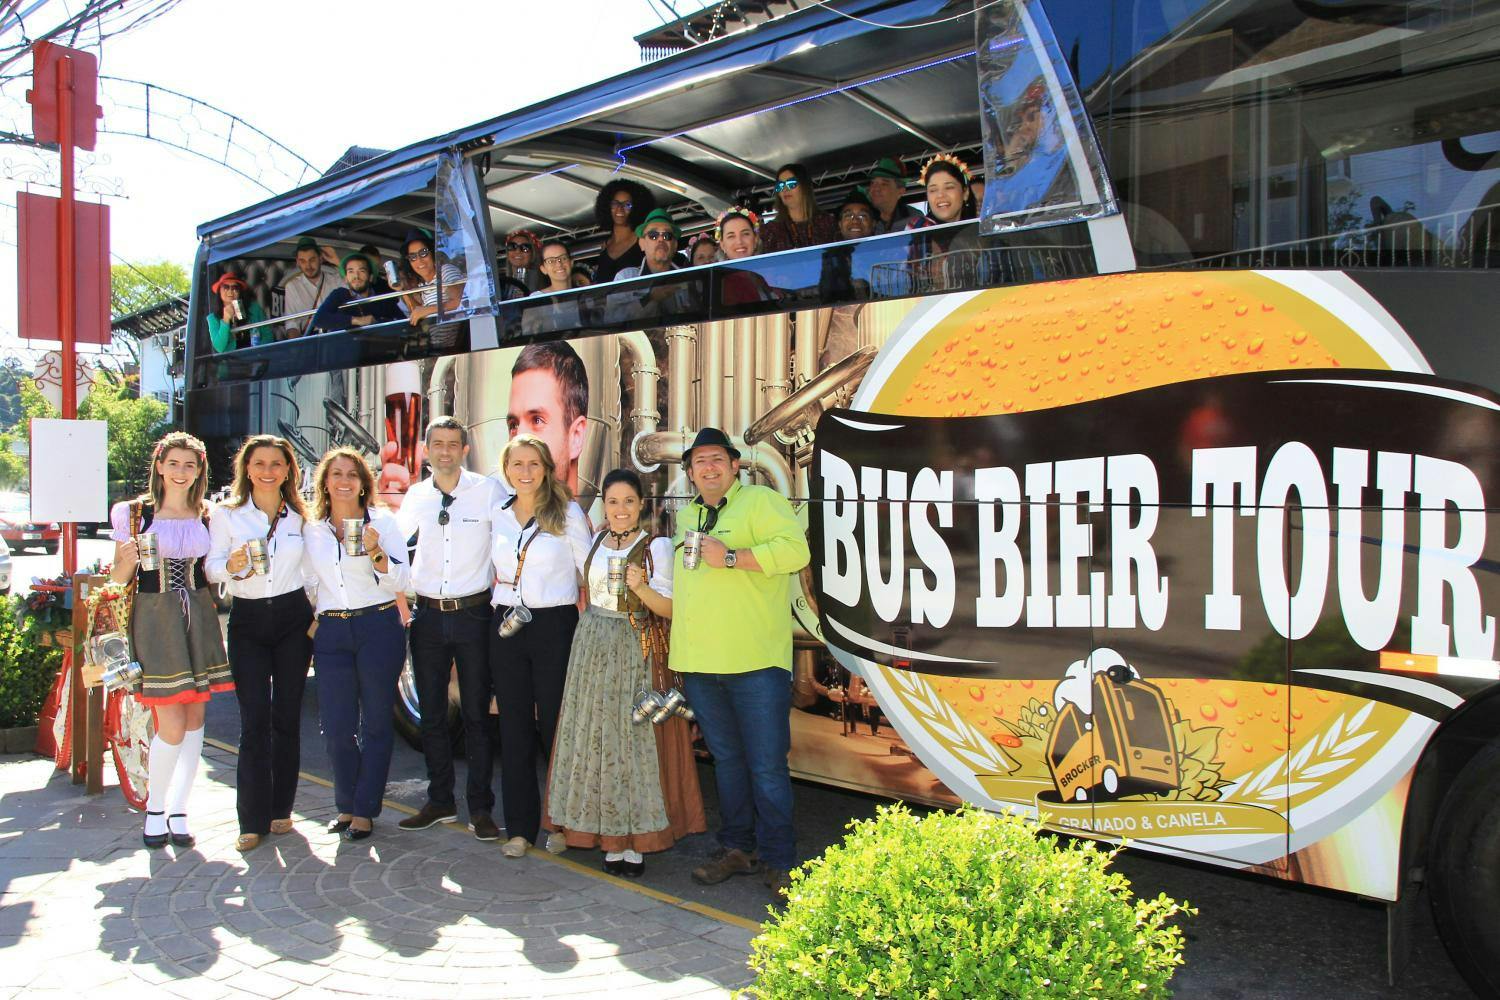 Beer bus tour 1.jpg